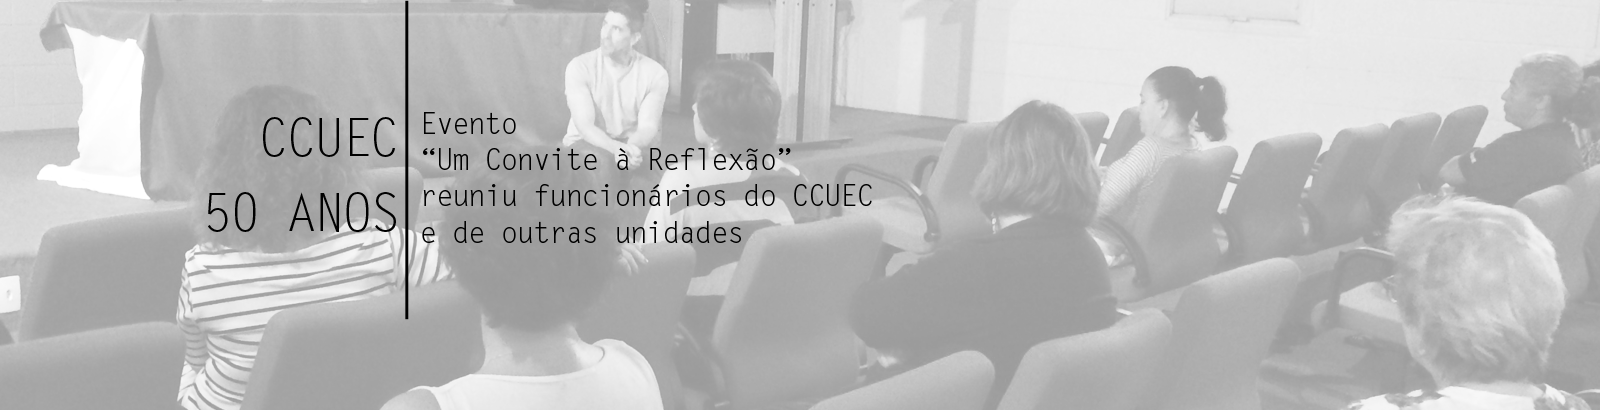 Evento “Um Convite à Reflexão” reuniu funcionários do CCUEC e de outras unidades da Unicamp.